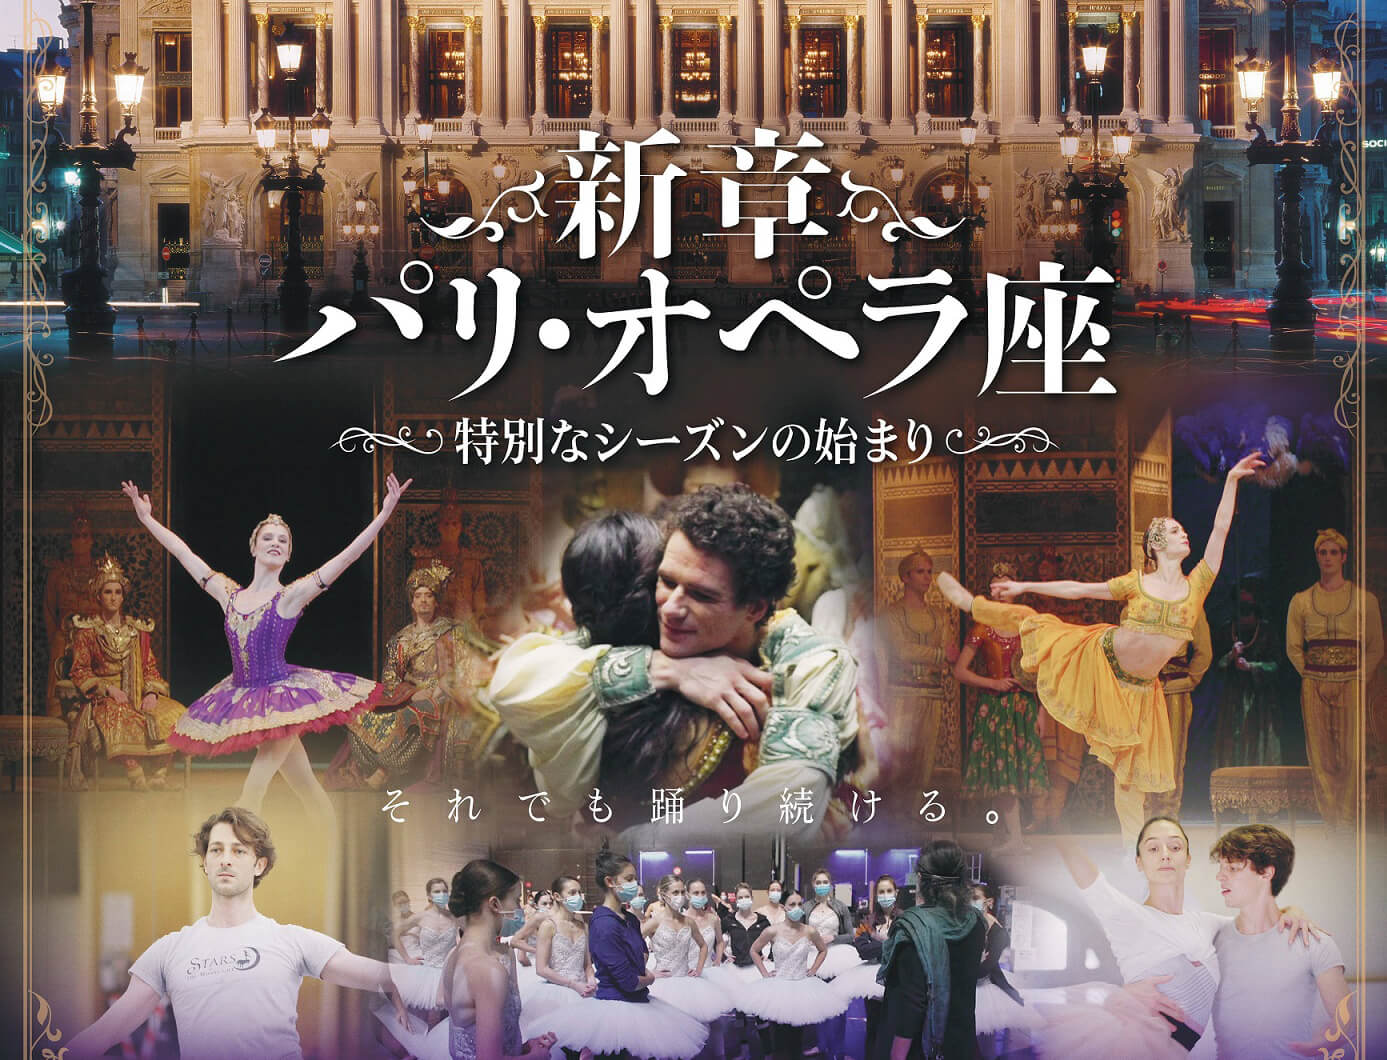 上質 バレエ ブルーレイ 新章 パリ オペラ座〜特別なシーズンの始まり〜 Blu-ray